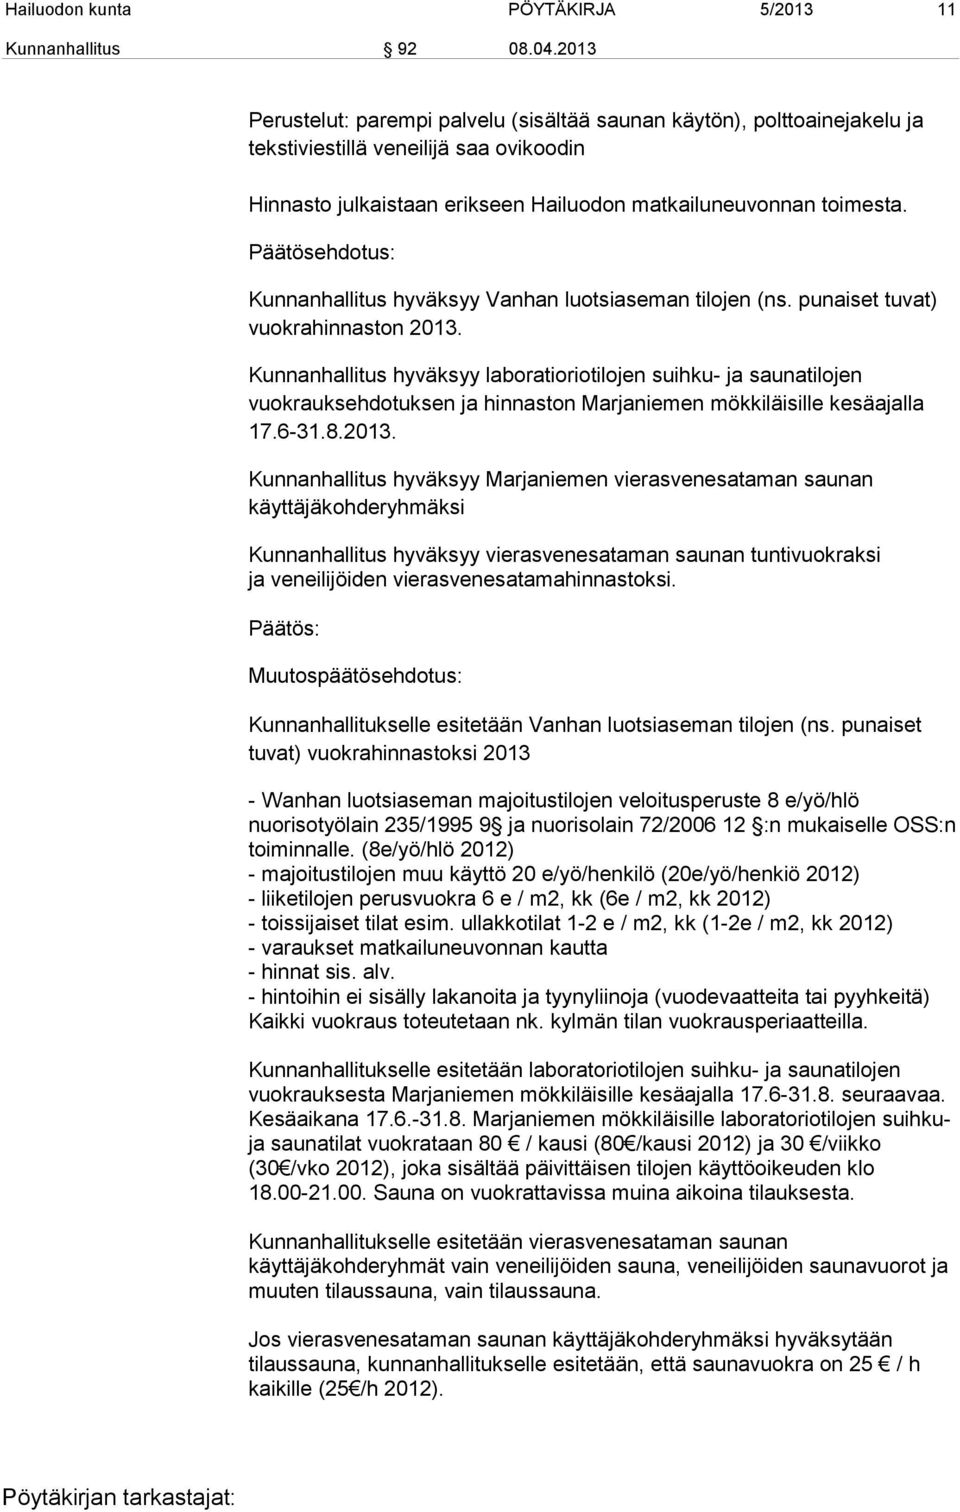 Kunnanhallitus hyväksyy Vanhan luotsiaseman tilojen (ns. punaiset tuvat) vuokrahinnaston 2013.